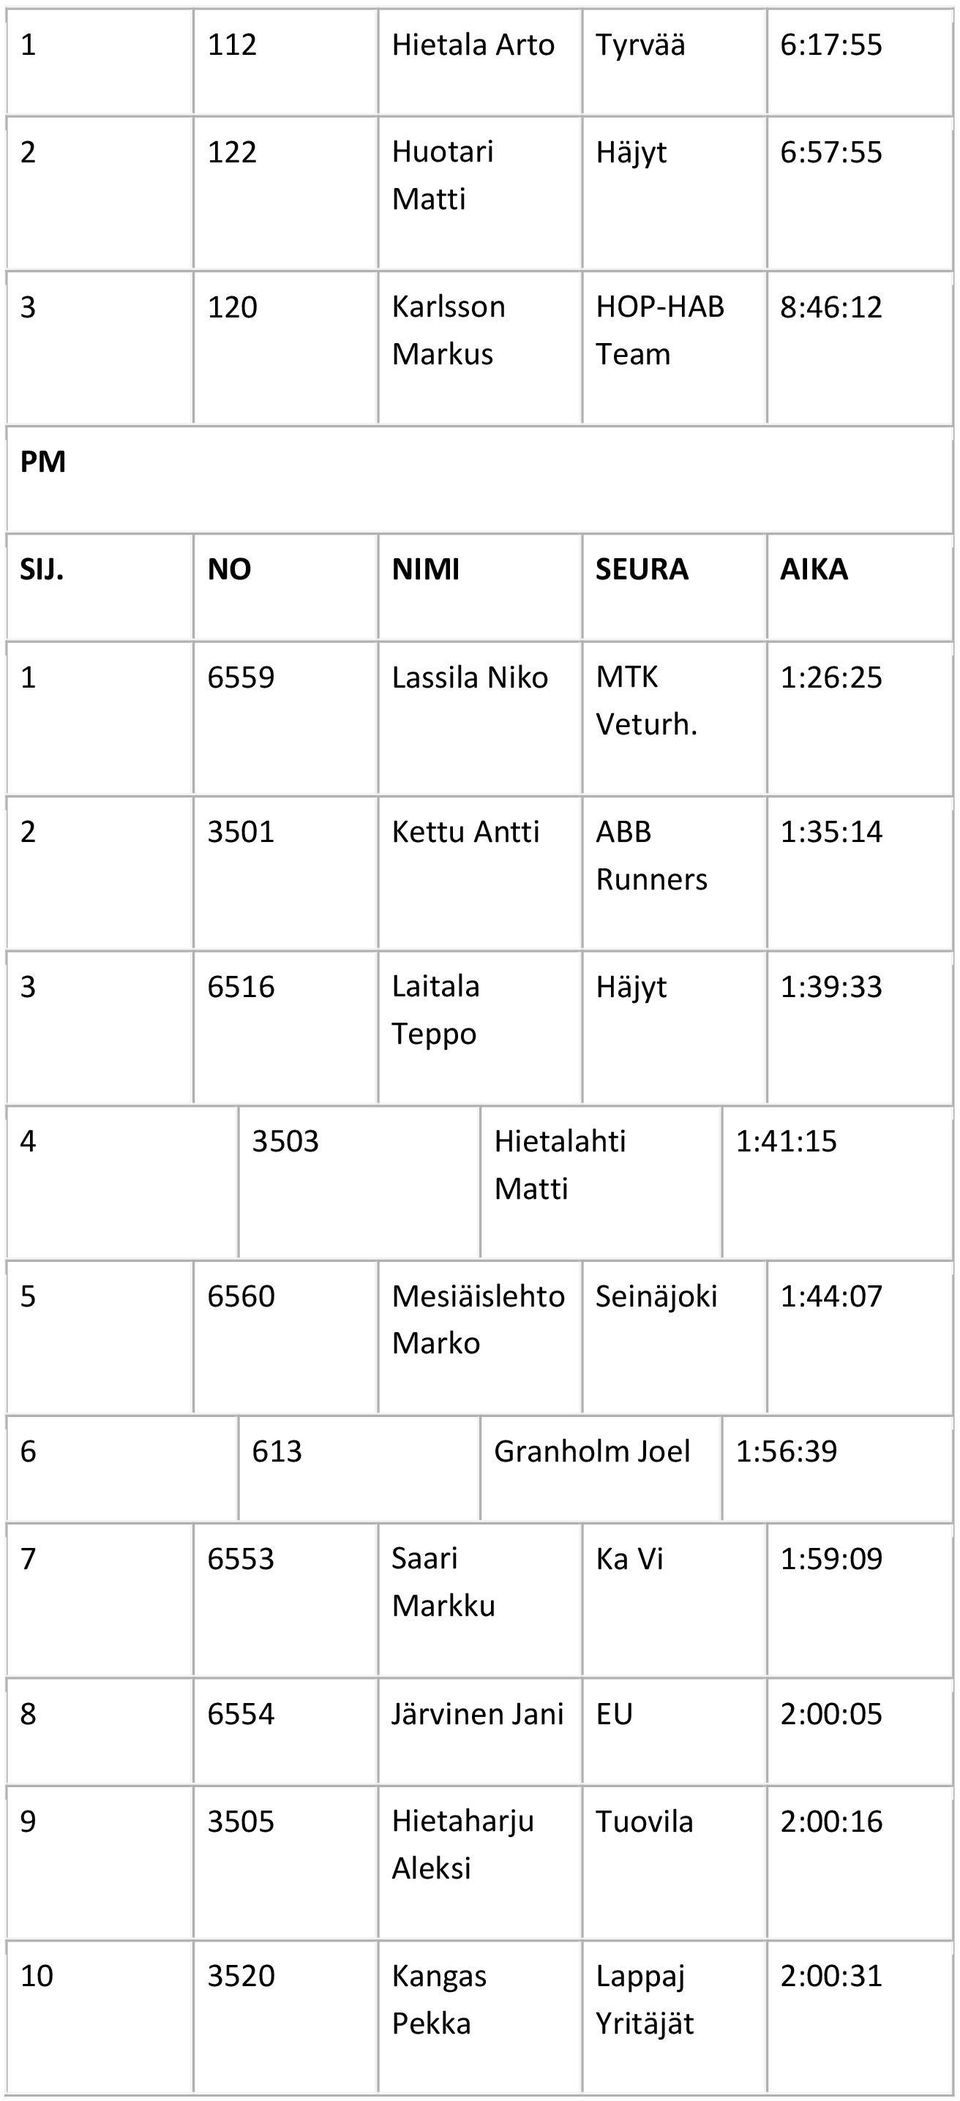 1:26:25 2 3501 Kettu Antti ABB Runners 1:35:14 3 6516 Laitala Teppo Häjyt 1:39:33 4 3503 Hietalahti Matti 1:41:15 5 6560